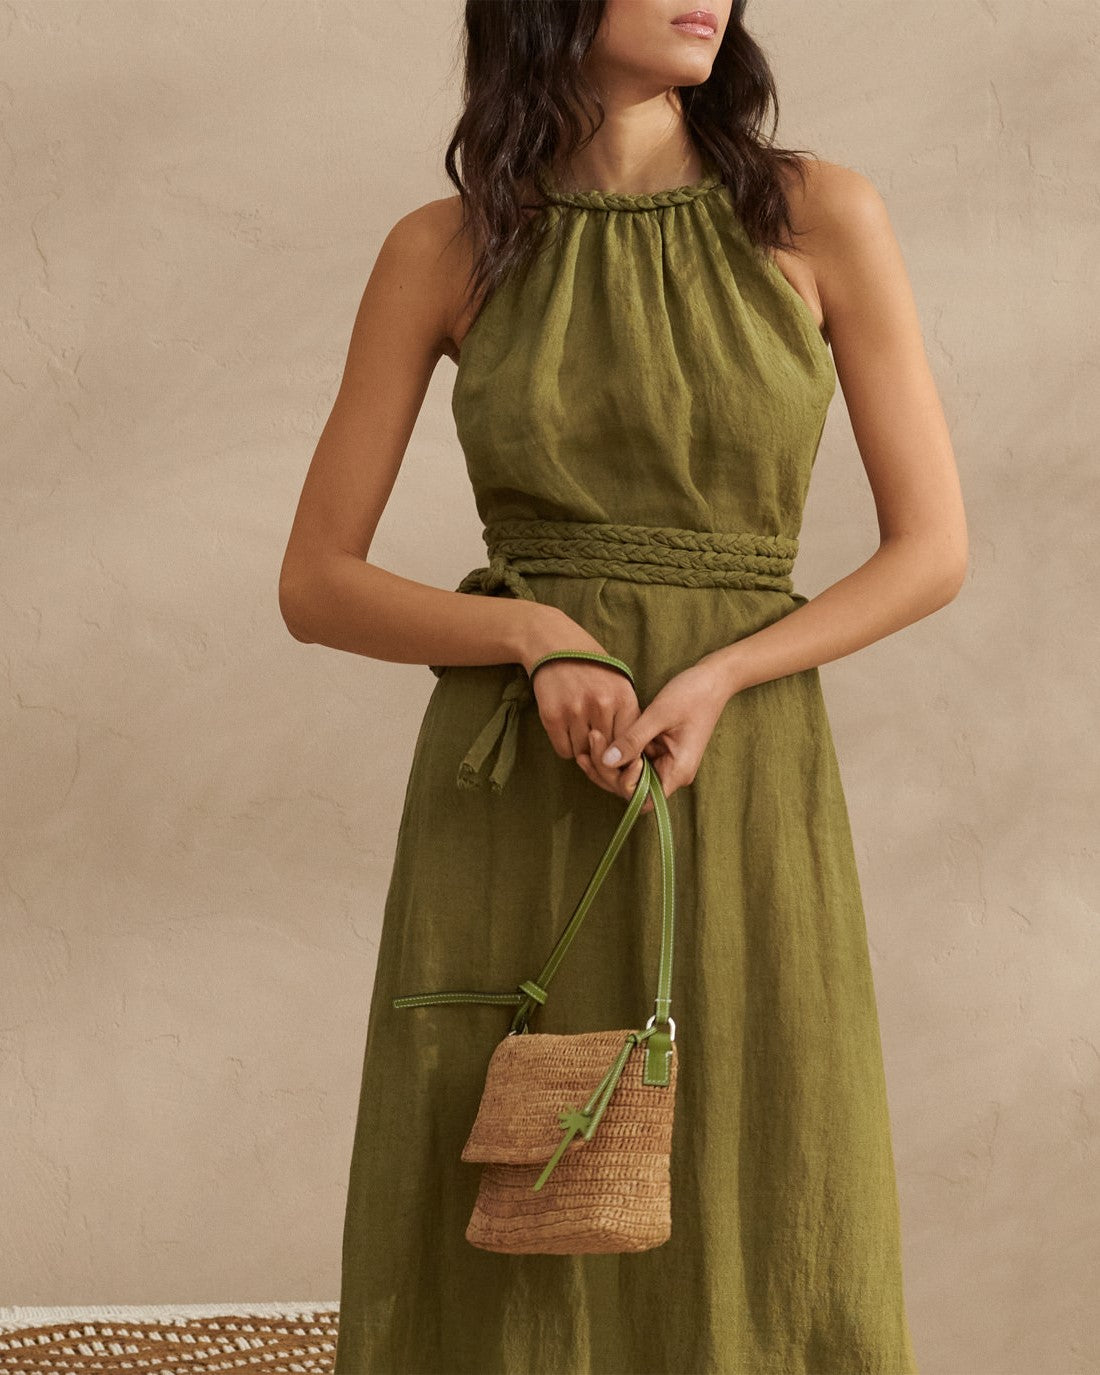 Raffia Summer Night Bag Medium - Tan & Green